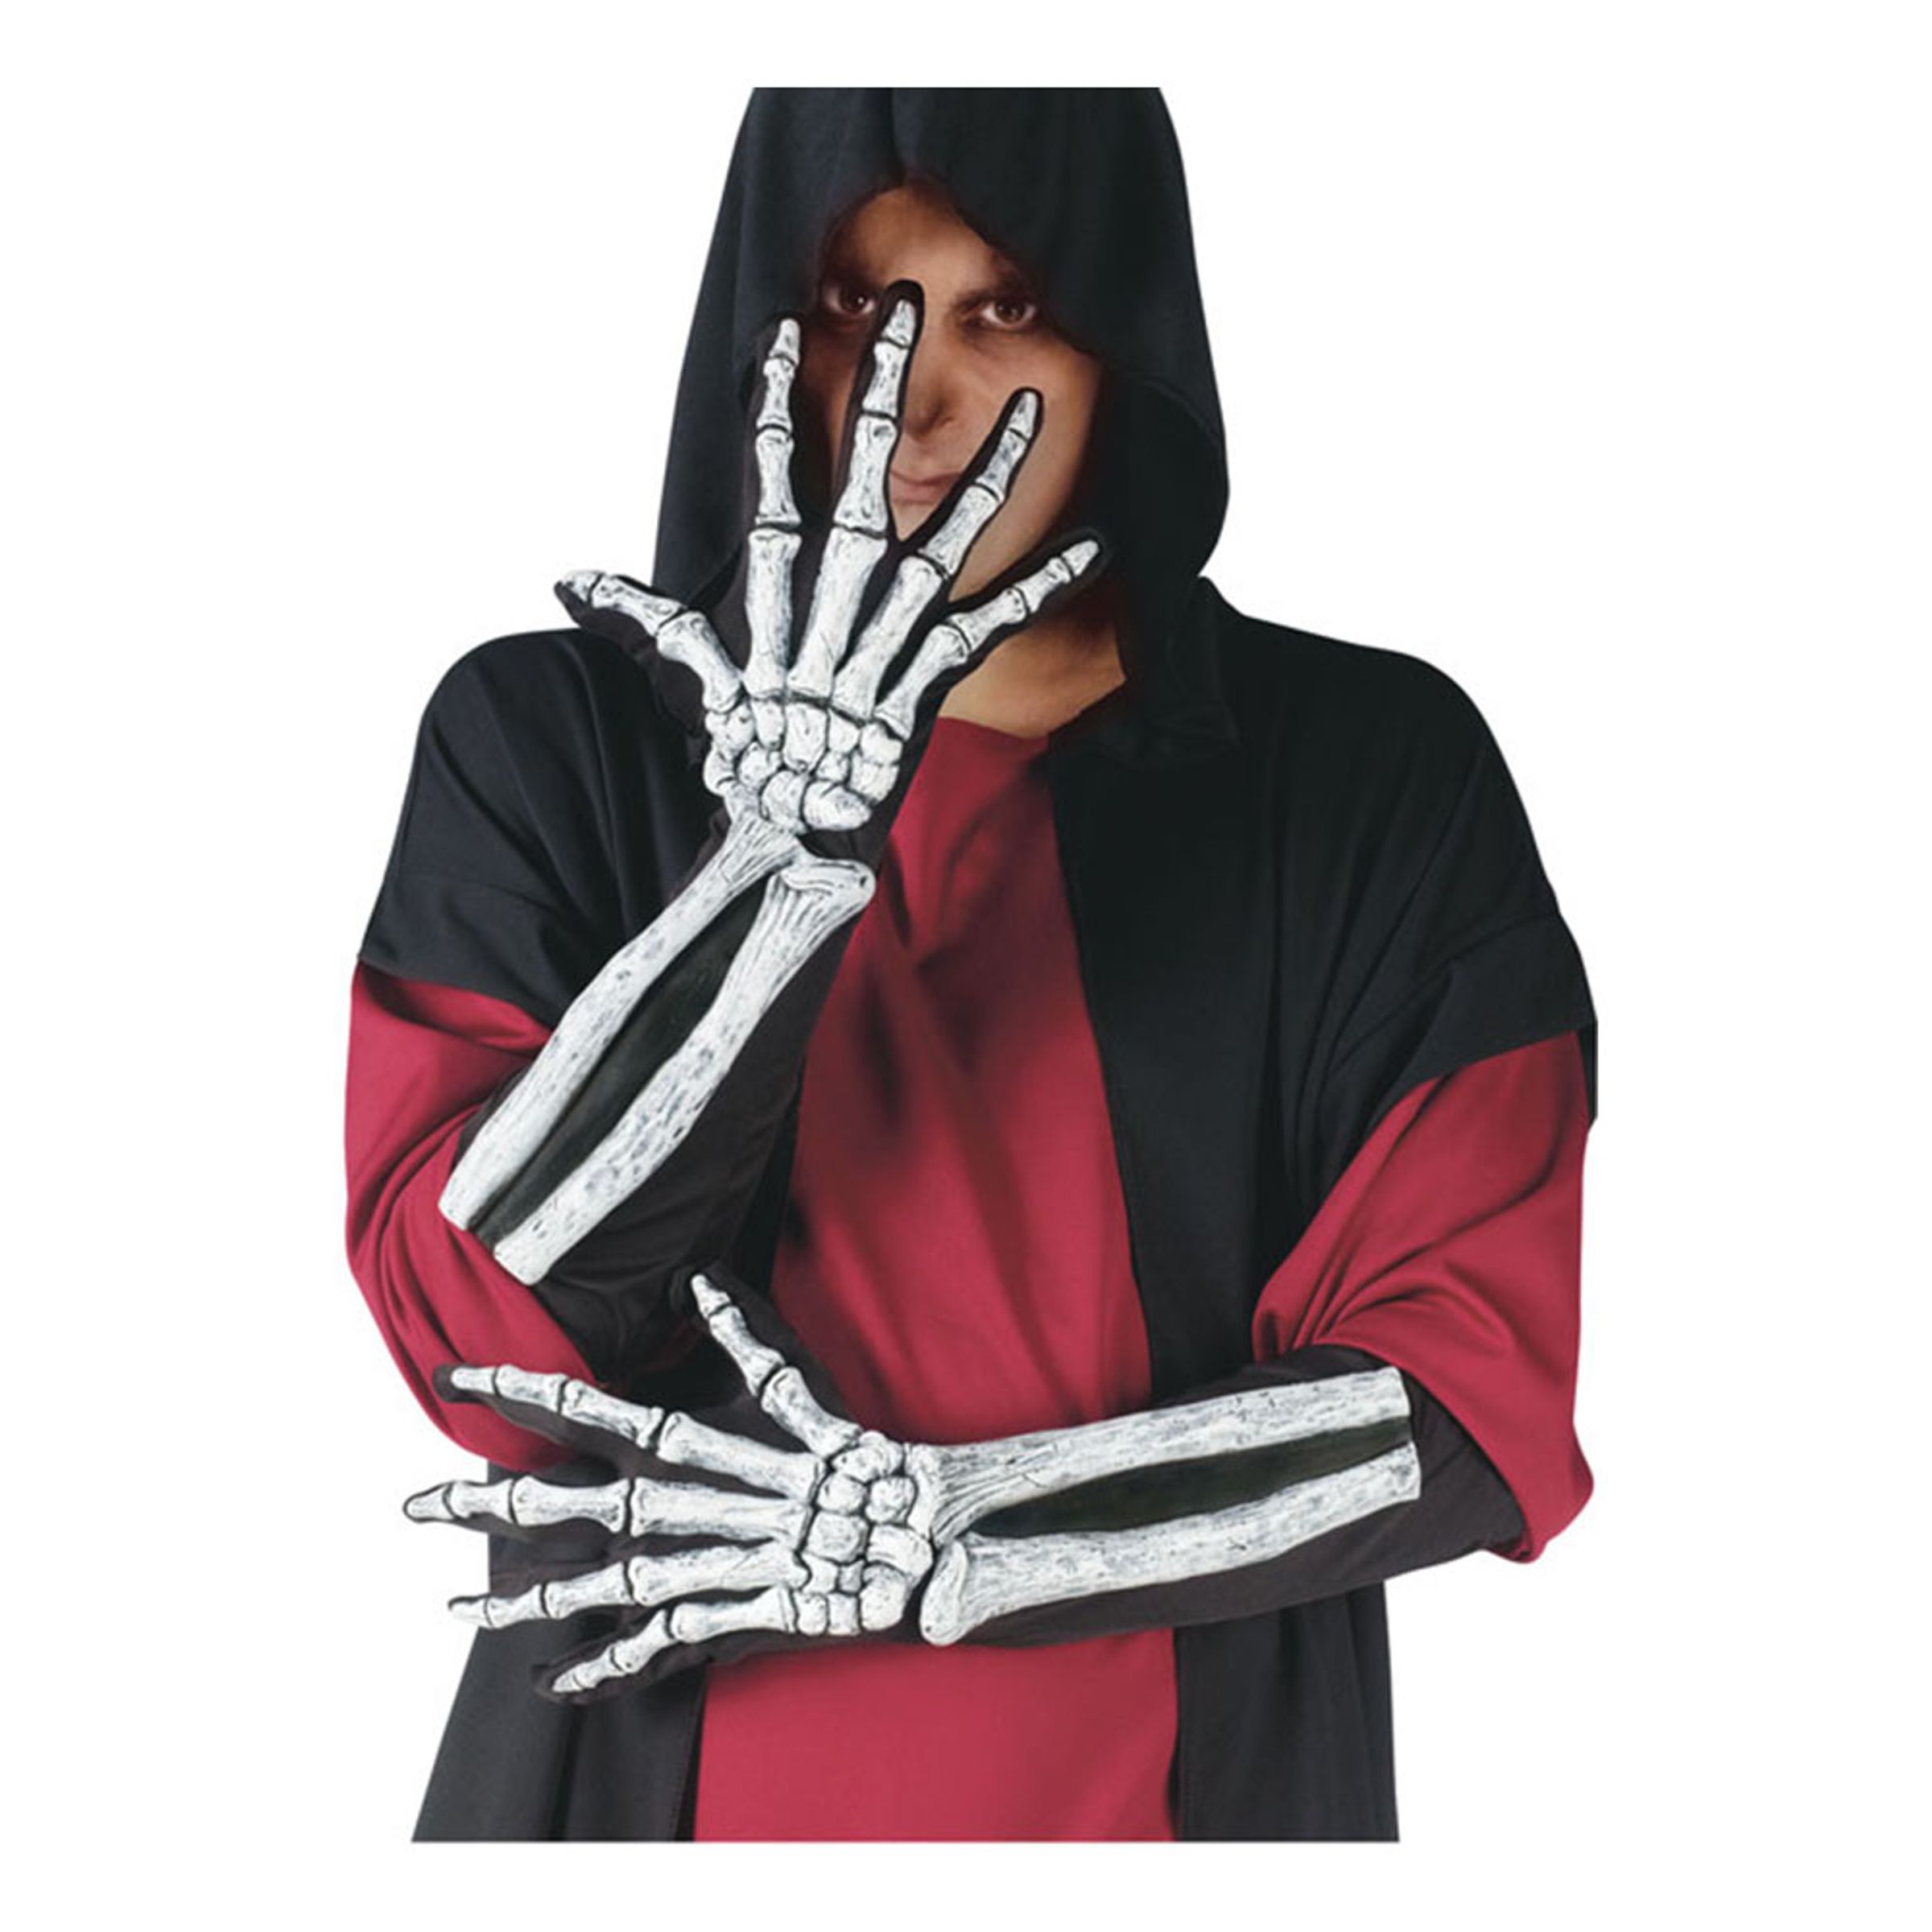 Skeletthänder med Arm - One size